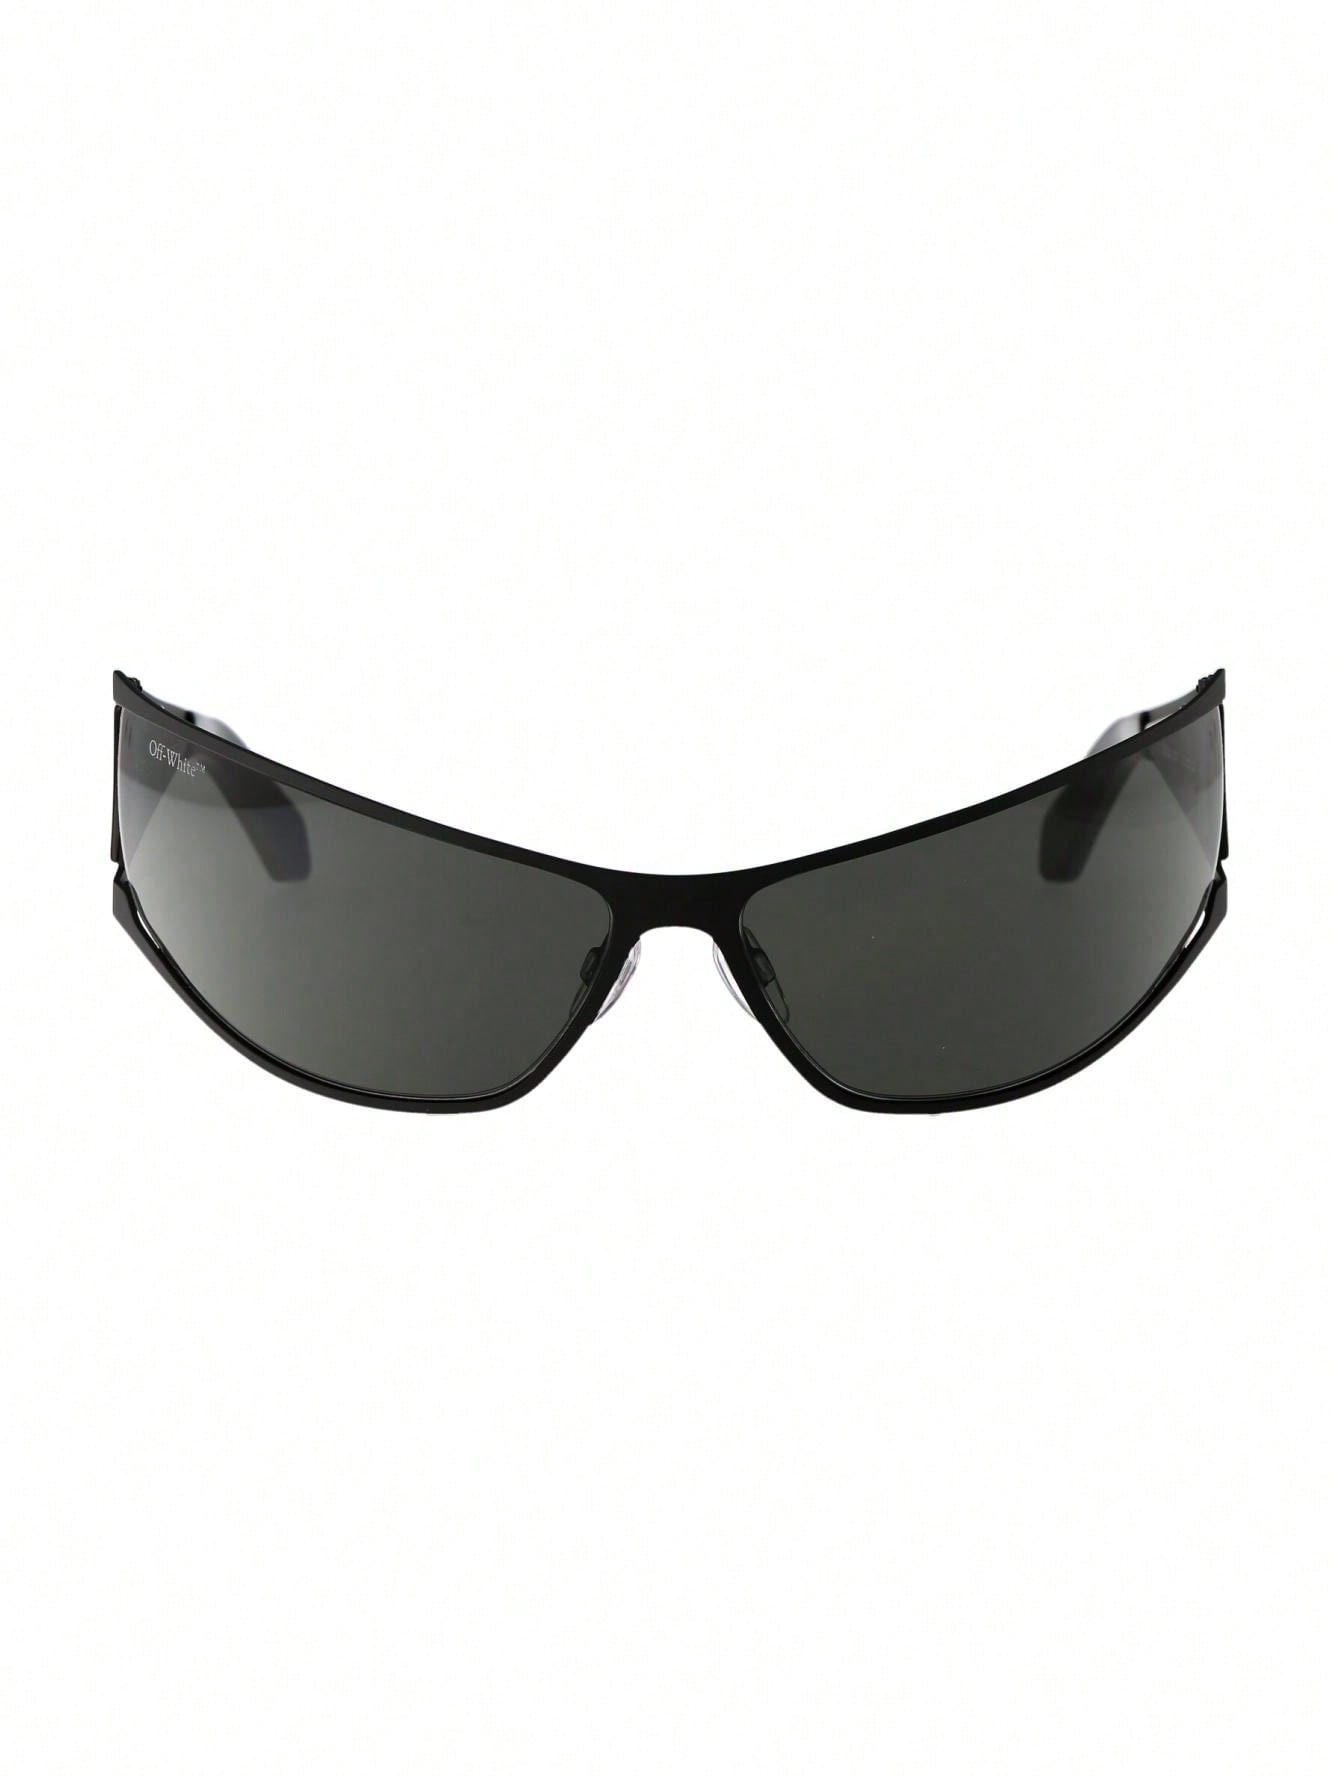 мужские солнцезащитные очки off white черные oeri094f23pla0011007 черный Мужские солнцезащитные очки Off-White ЧЕРНЫЕ OERI102F23MET0011007, черный